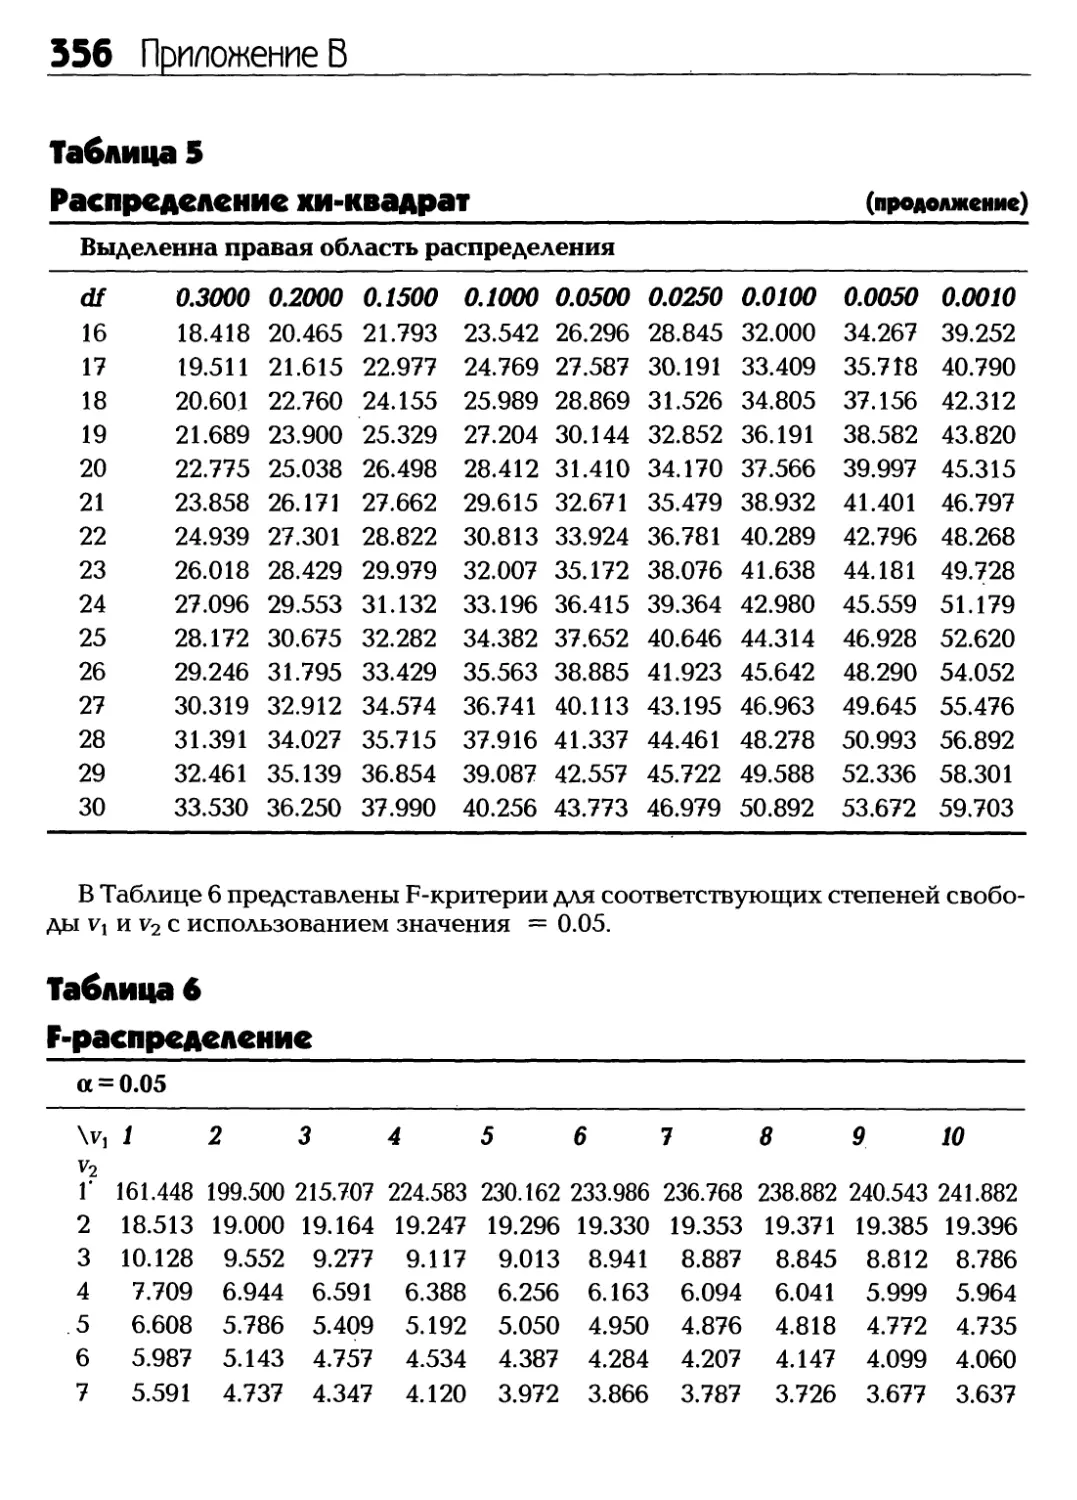 Таблица 6. F-распределение